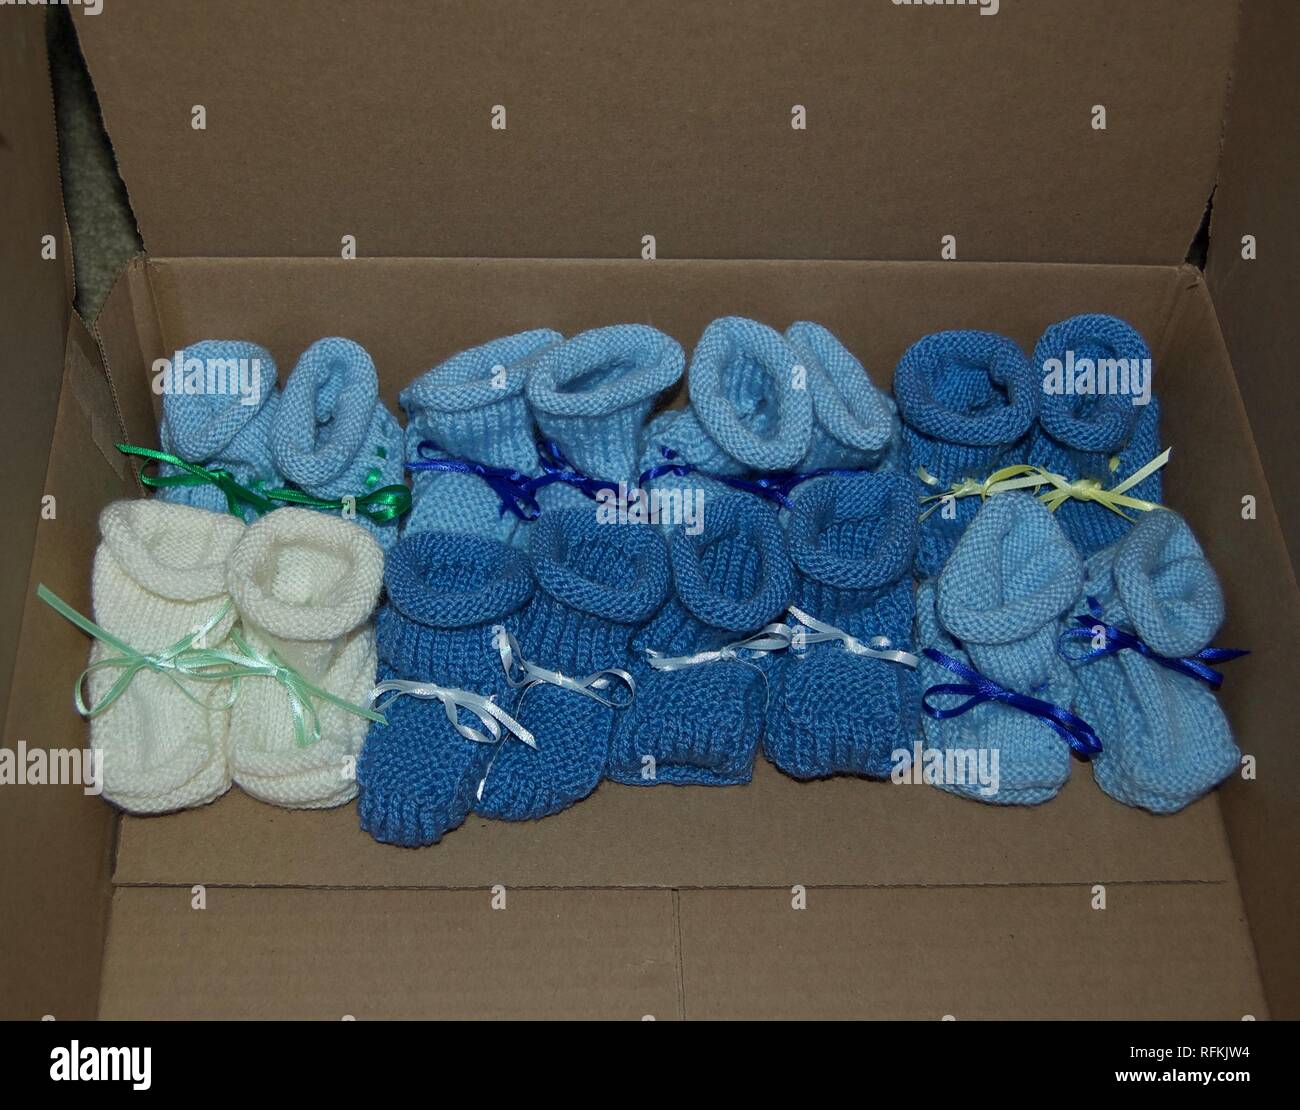 Gestrickte Junge Baby Booties mit Bändern aufgereiht in einer Reihe - Farben: Hellblau, Dunkelblau, Weiß Stockfoto